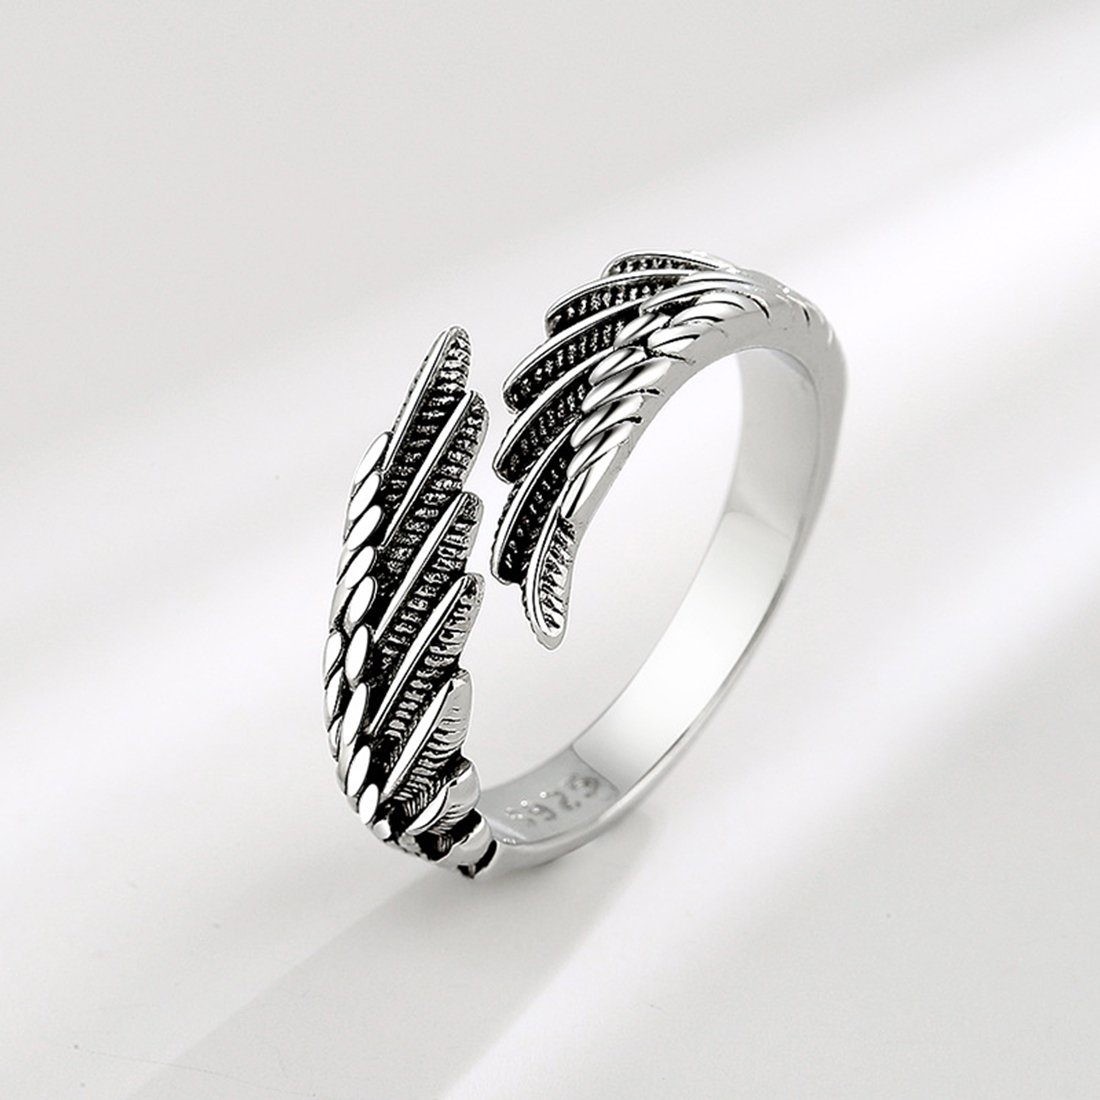 Haiaveng Fingerring für Unisex Feder Ring Offene Ringe, Vintage Angel Verstellbar Ringe,Damen Damen Ring Flügel Ringe,Engels